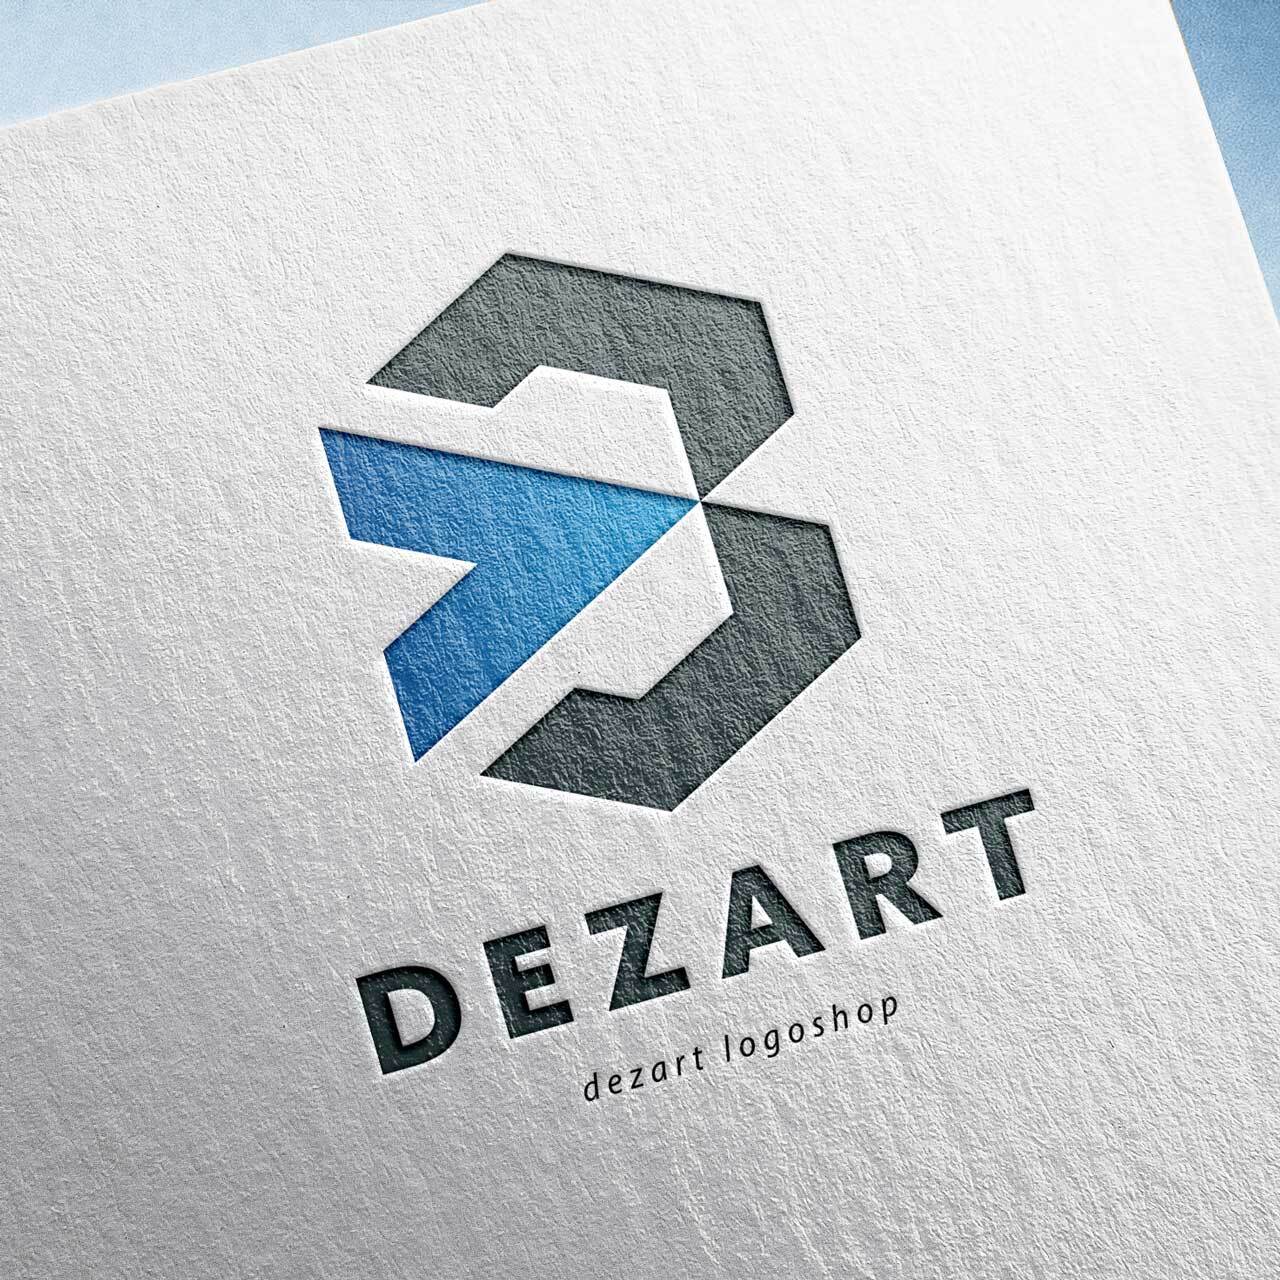 Dezart20_spreadB